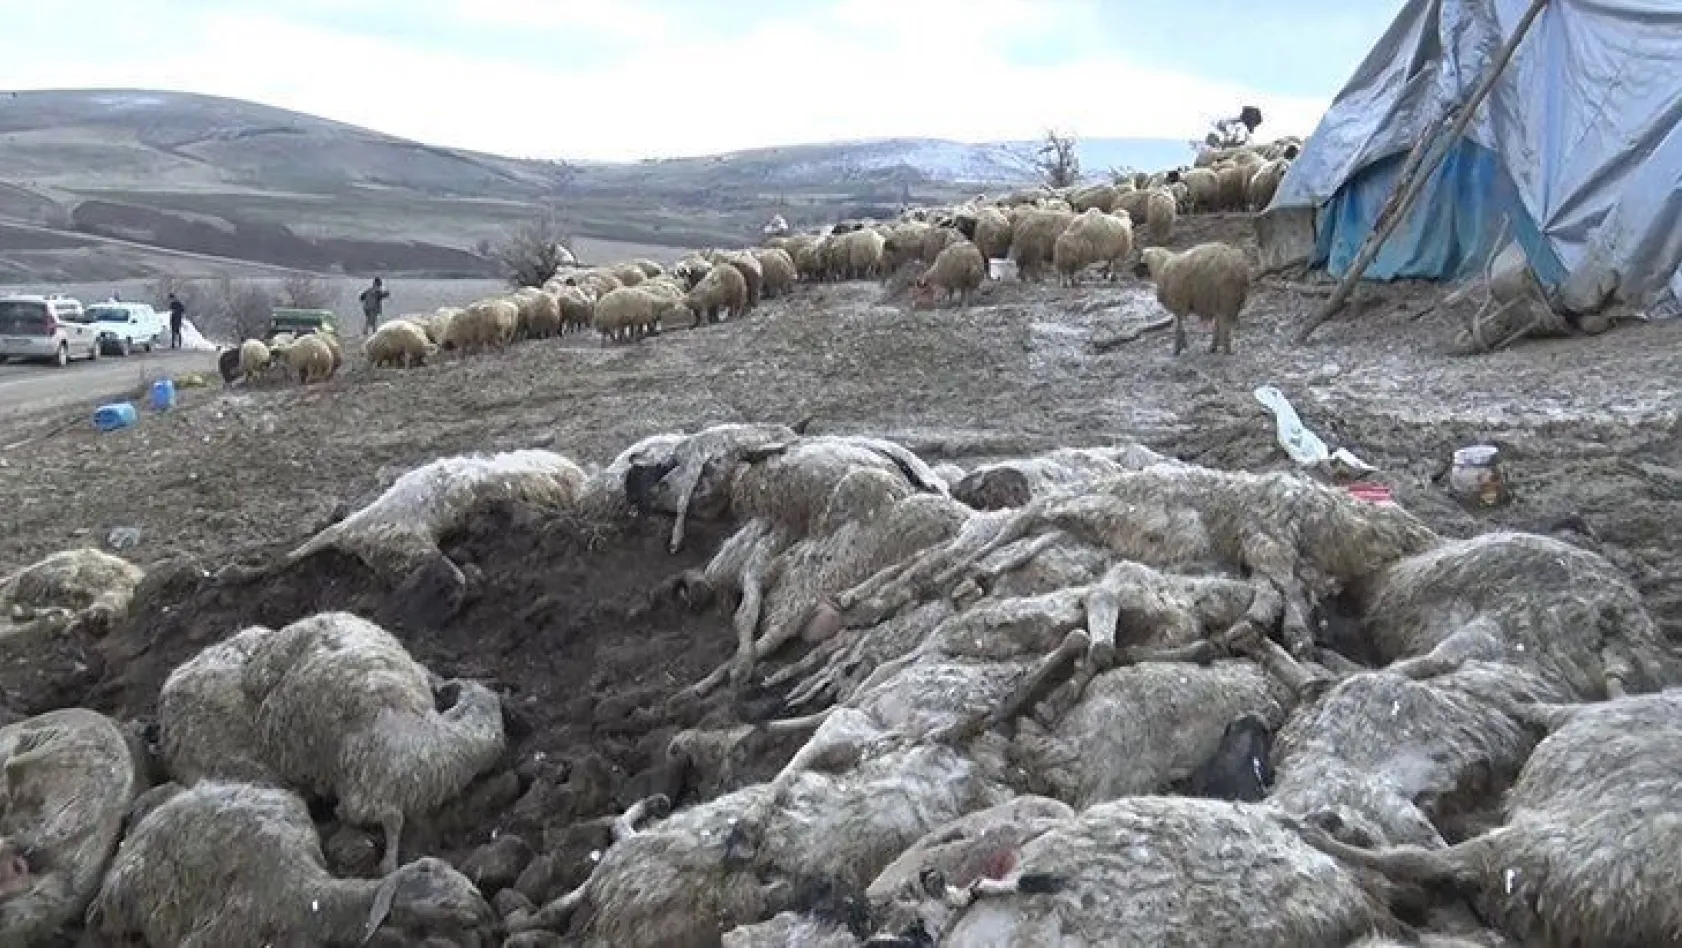 Elazığ'da çiçek hastalığı, 600'den fazla koyun telef oldu